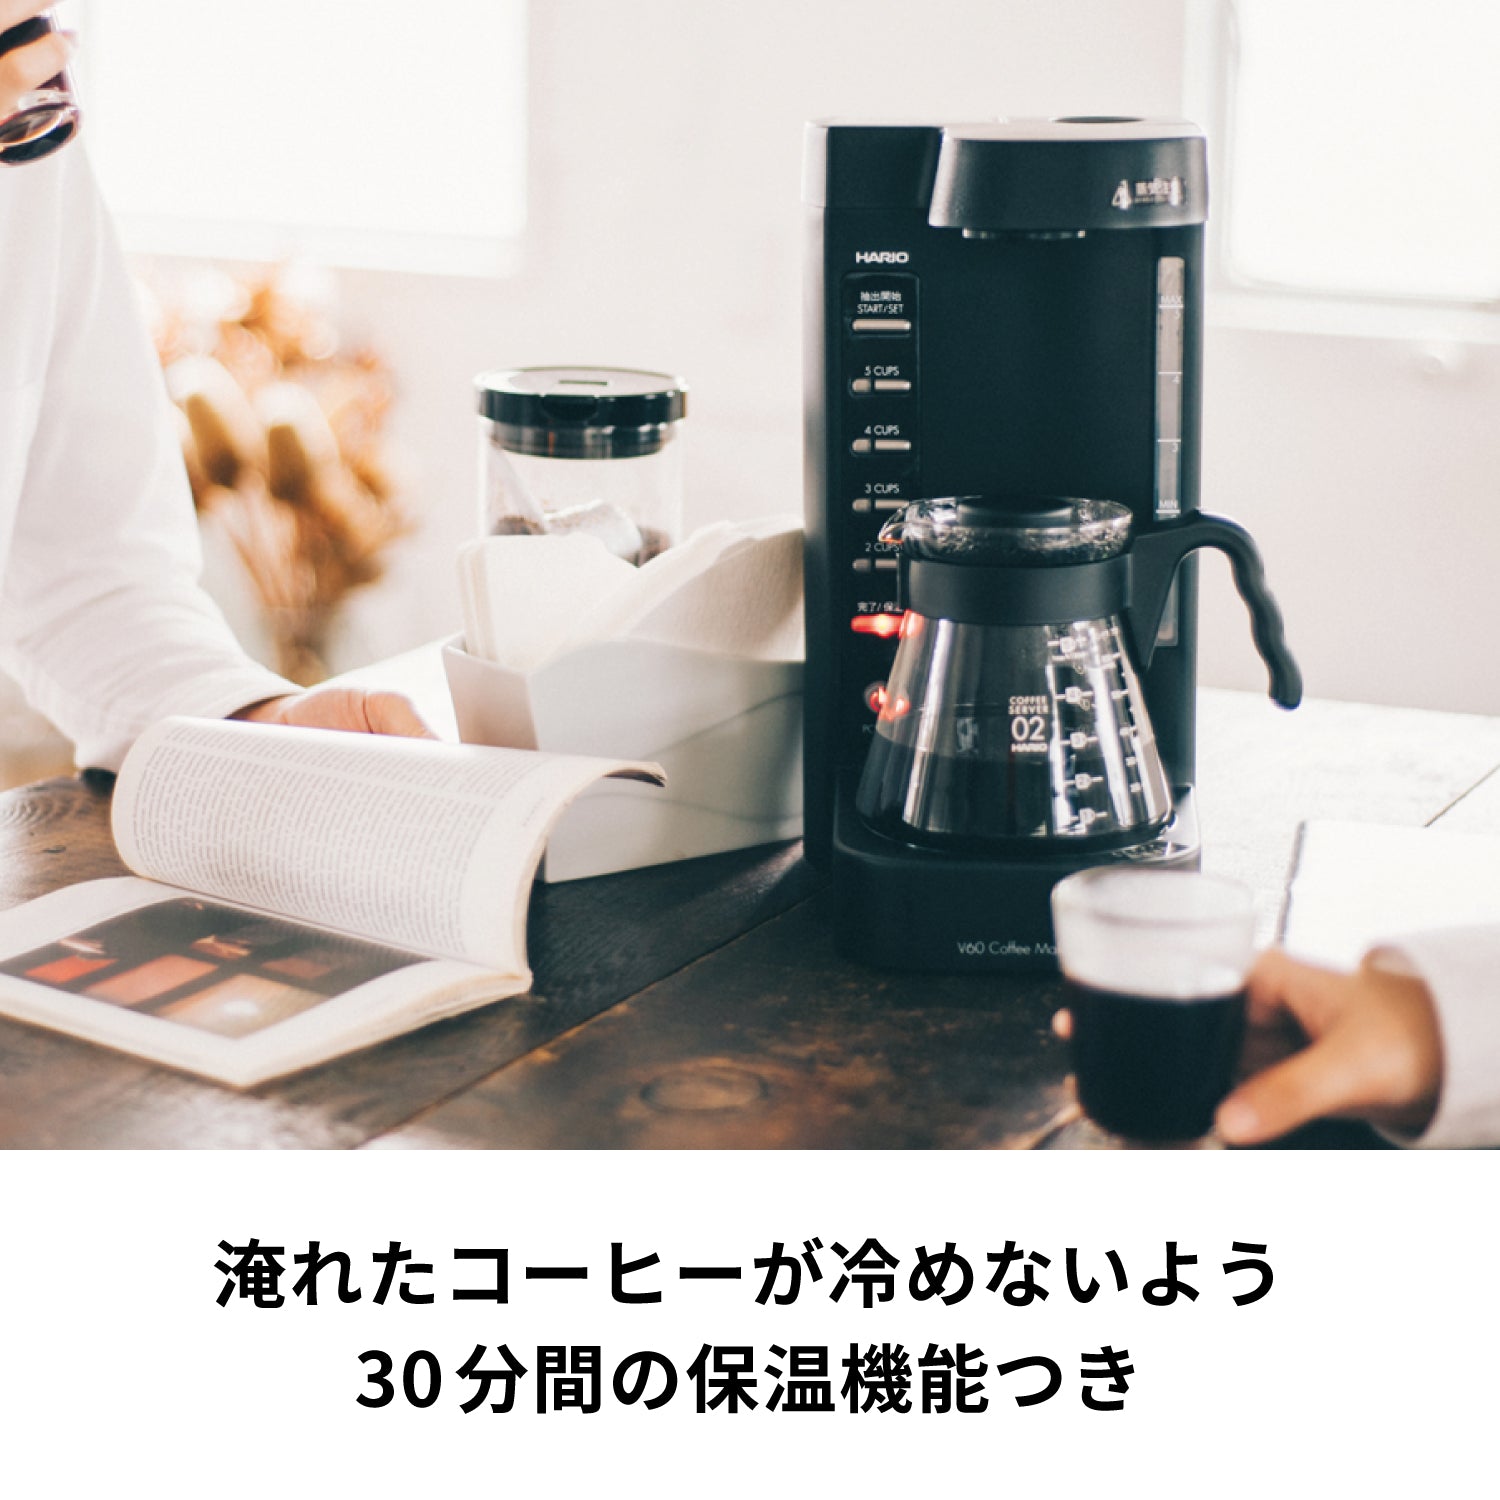 ハリオ V60 コーヒーメーカー 珈琲王2 EVCM2-5TBペーパーフィルターサーバー素材